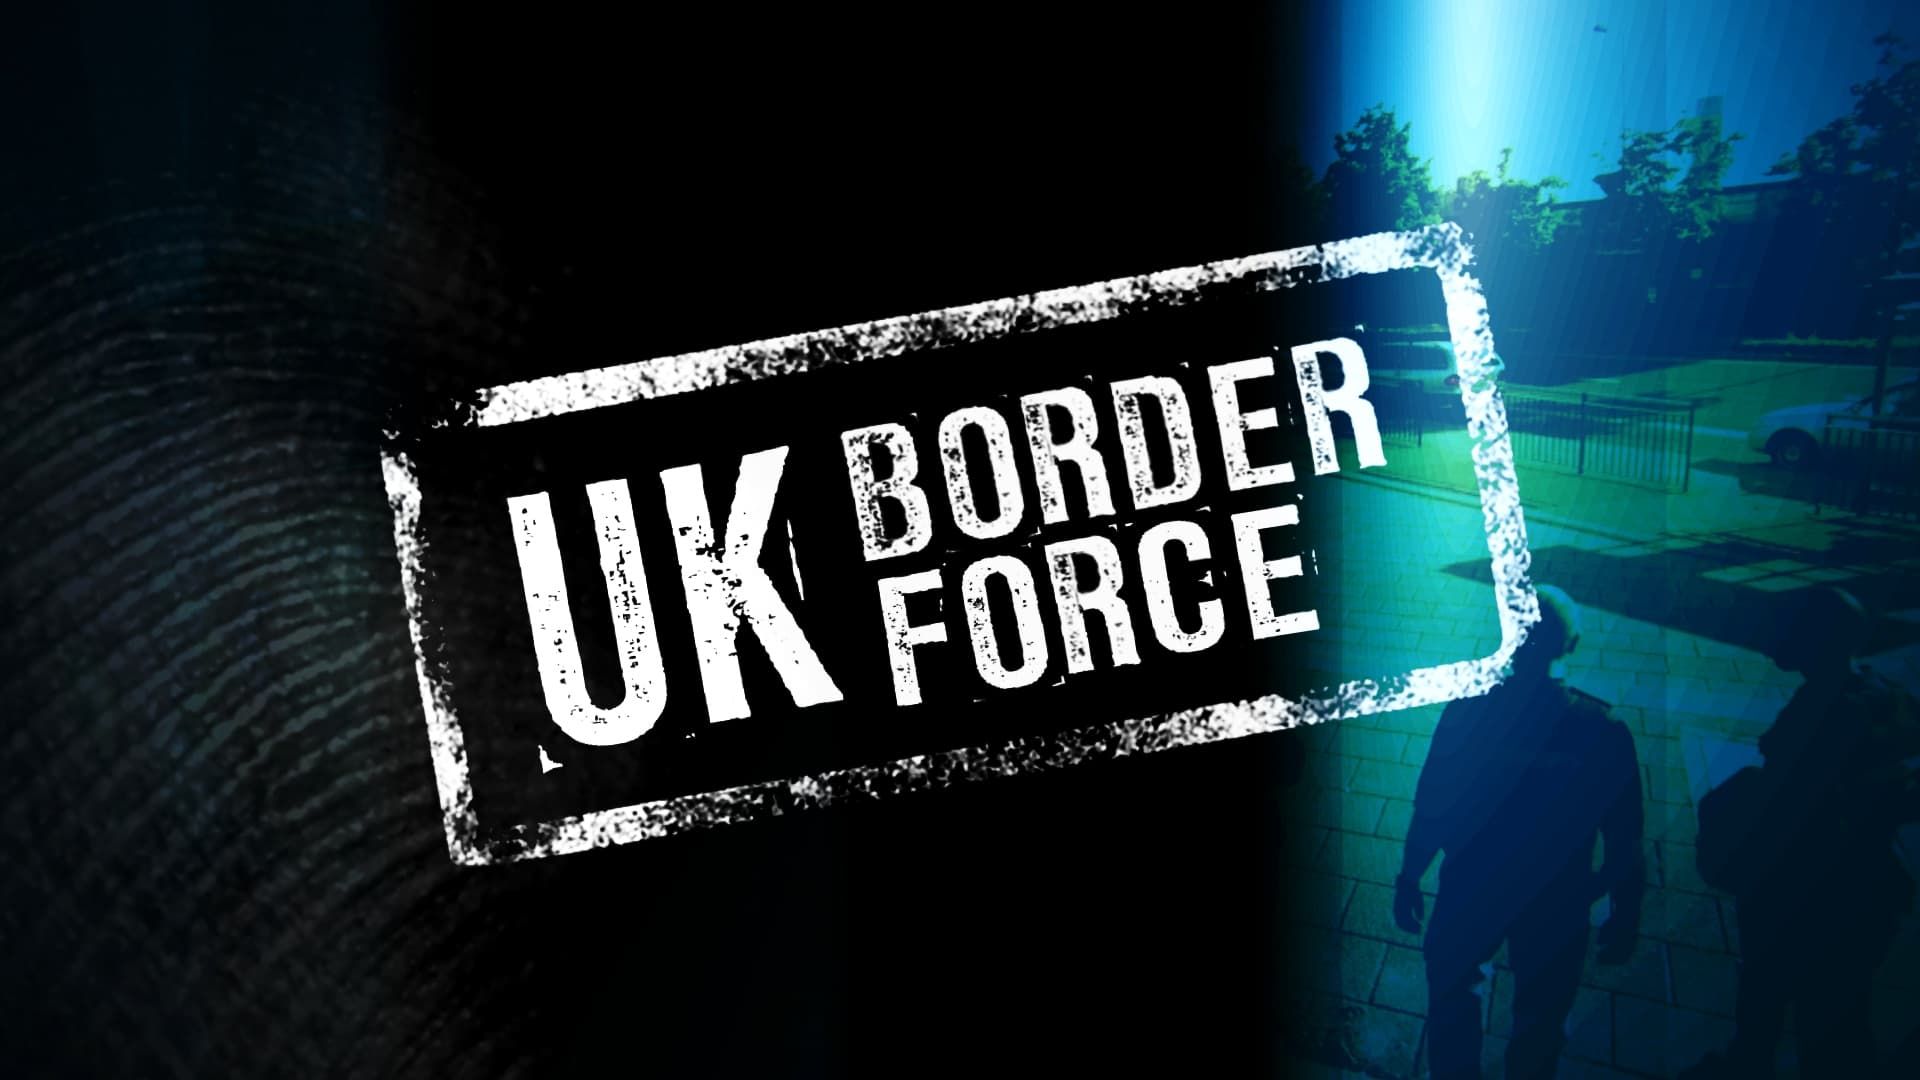 UK Border Force background